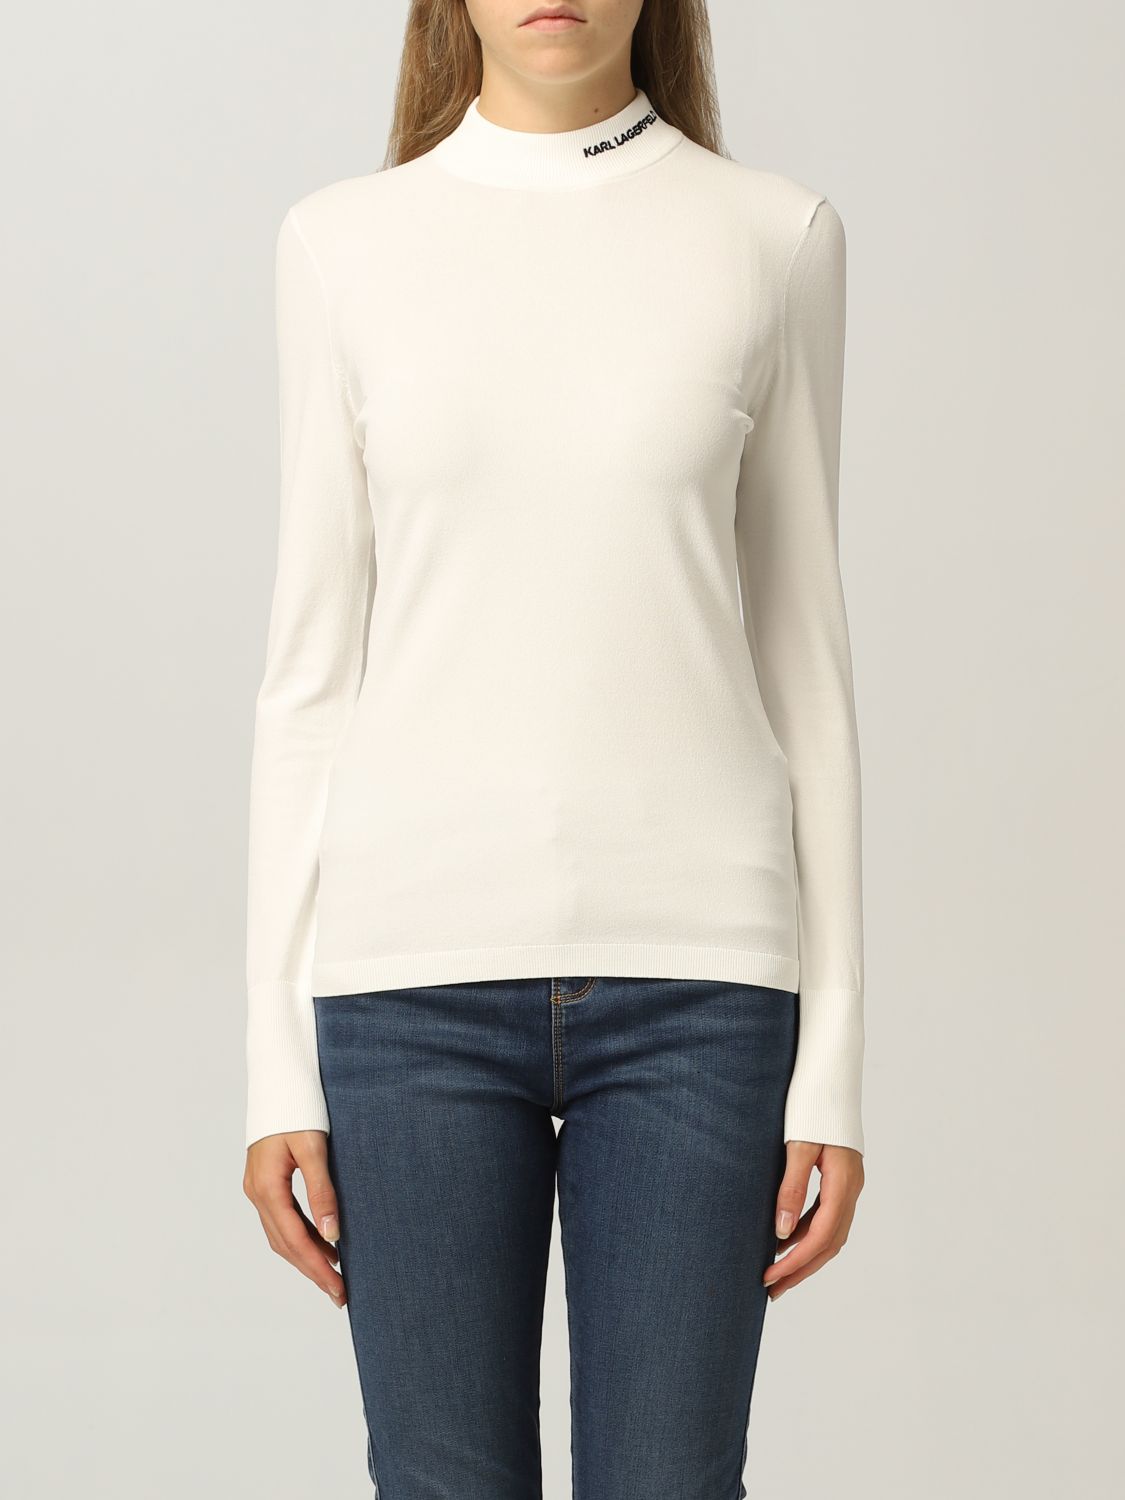 KARL LAGERFELD: Sweater women | Sweater Karl Lagerfeld Women White ...